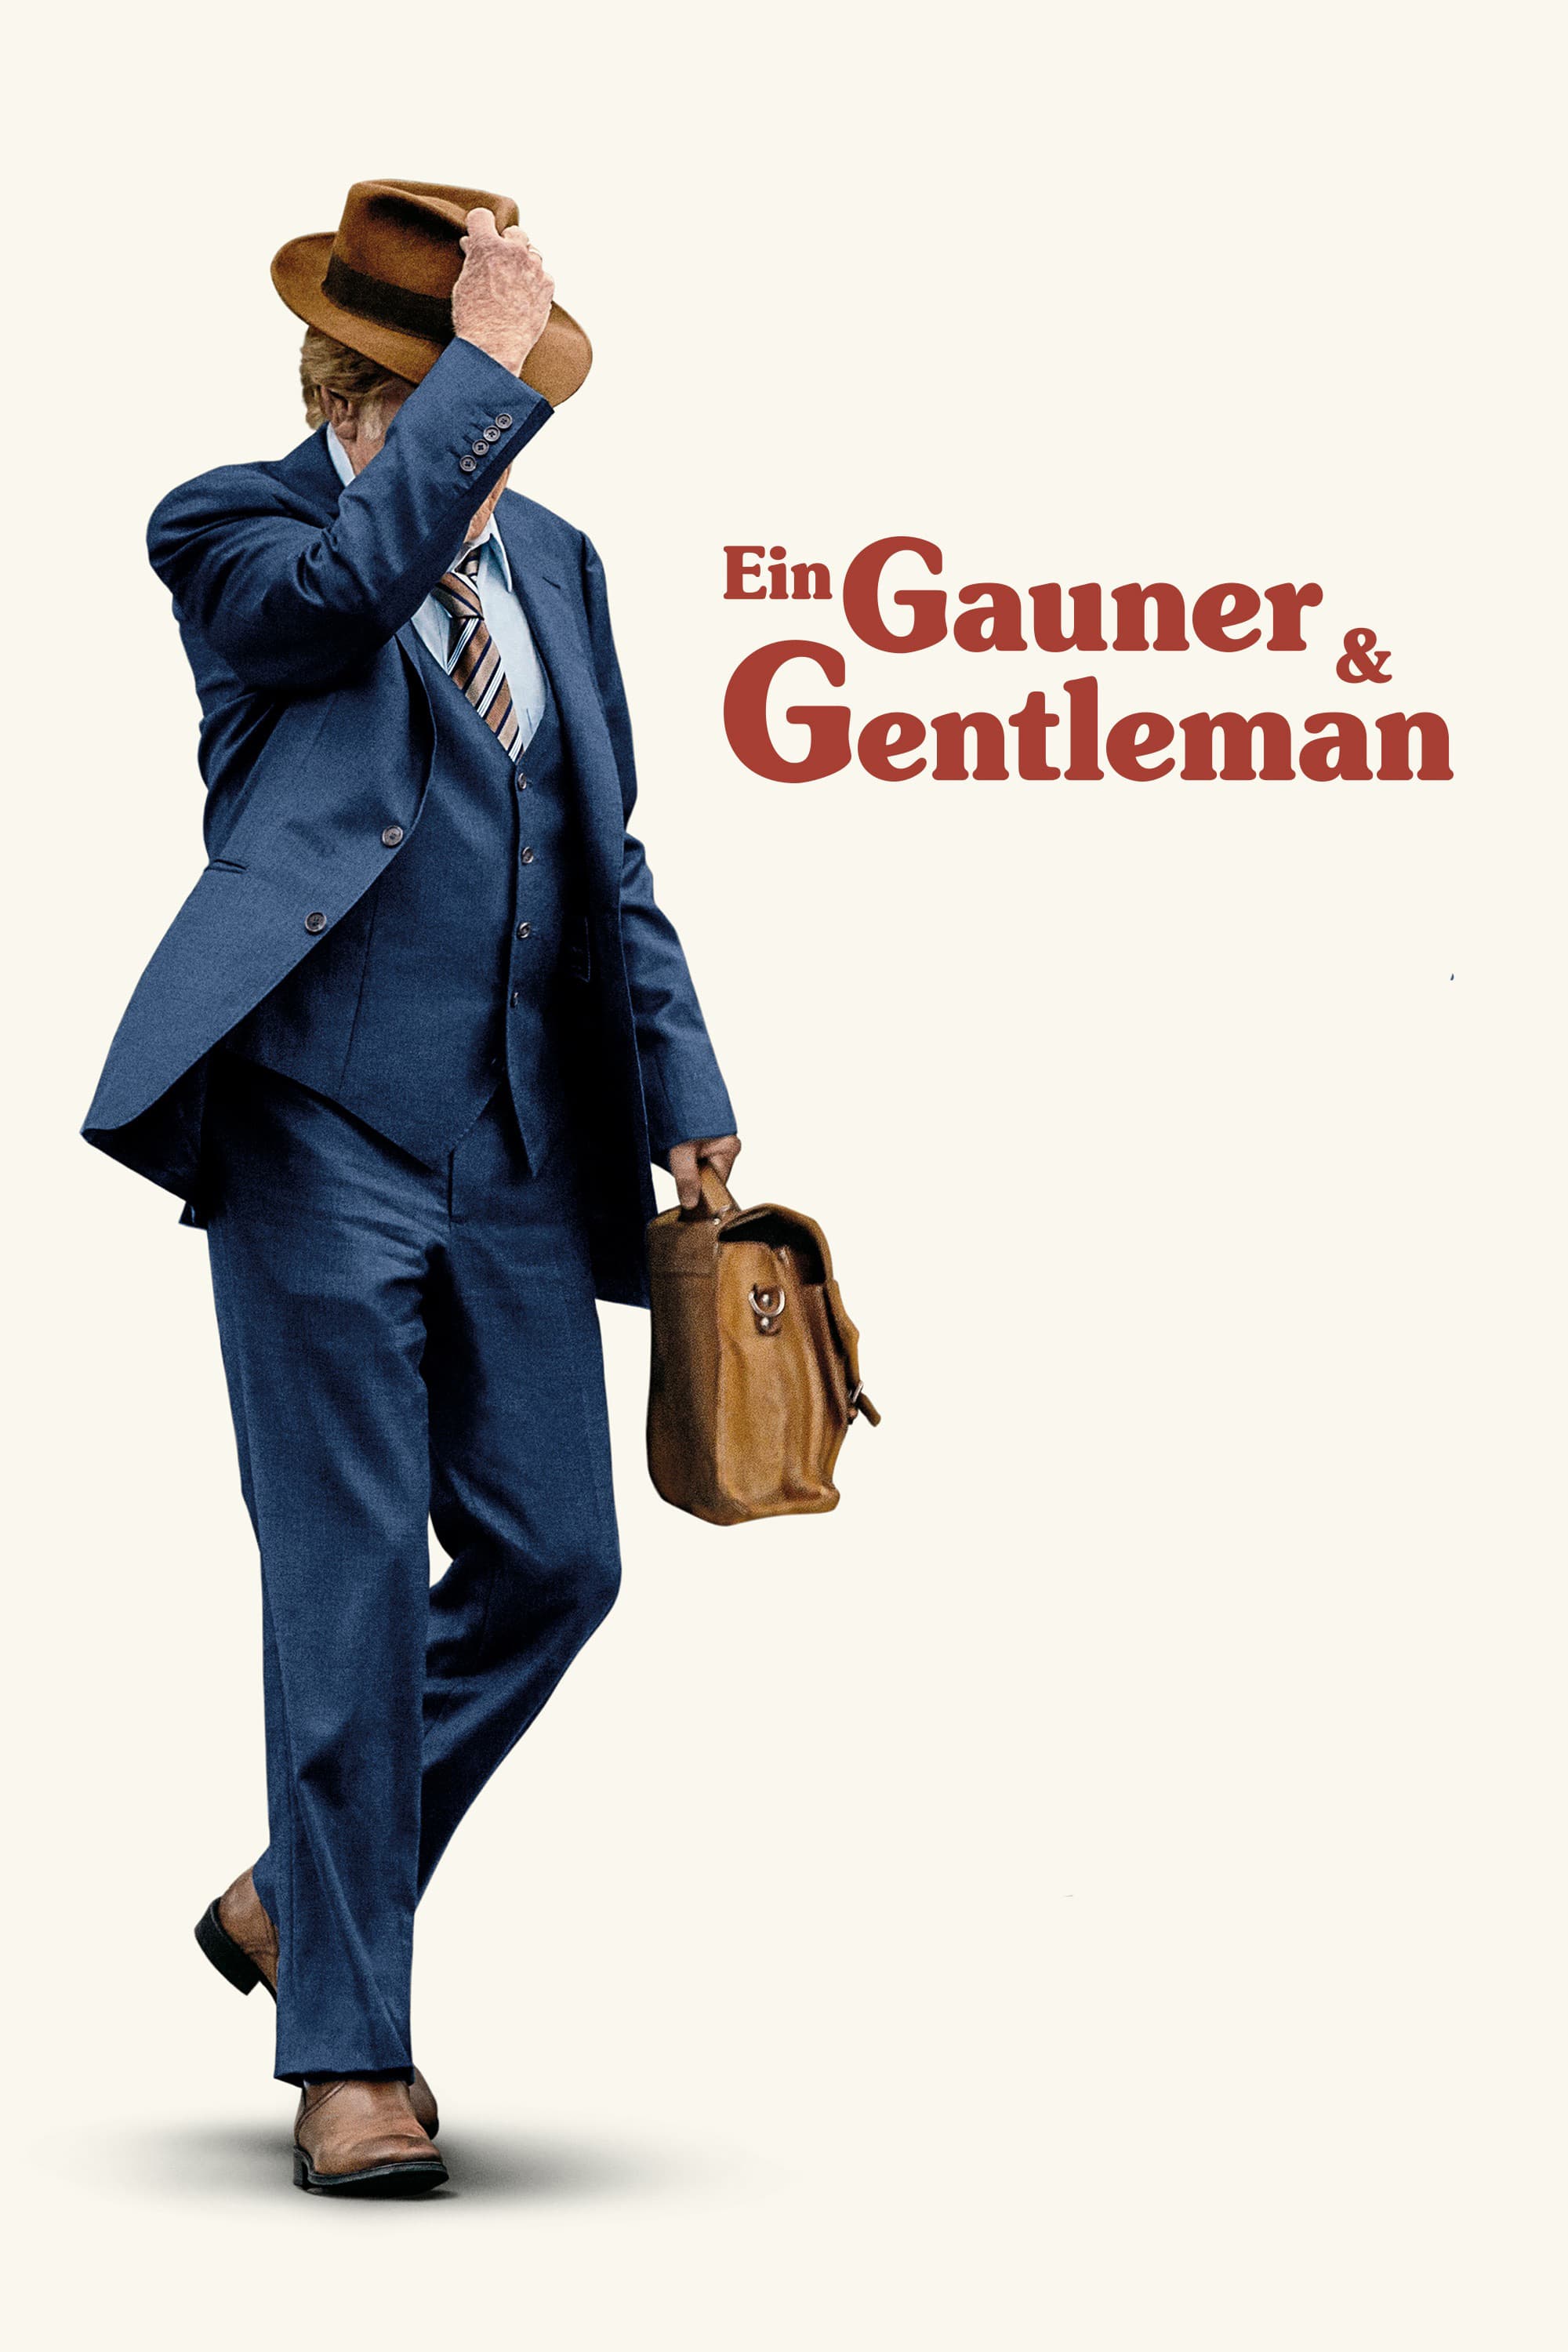 Plakat von "Ein Gauner & Gentleman"